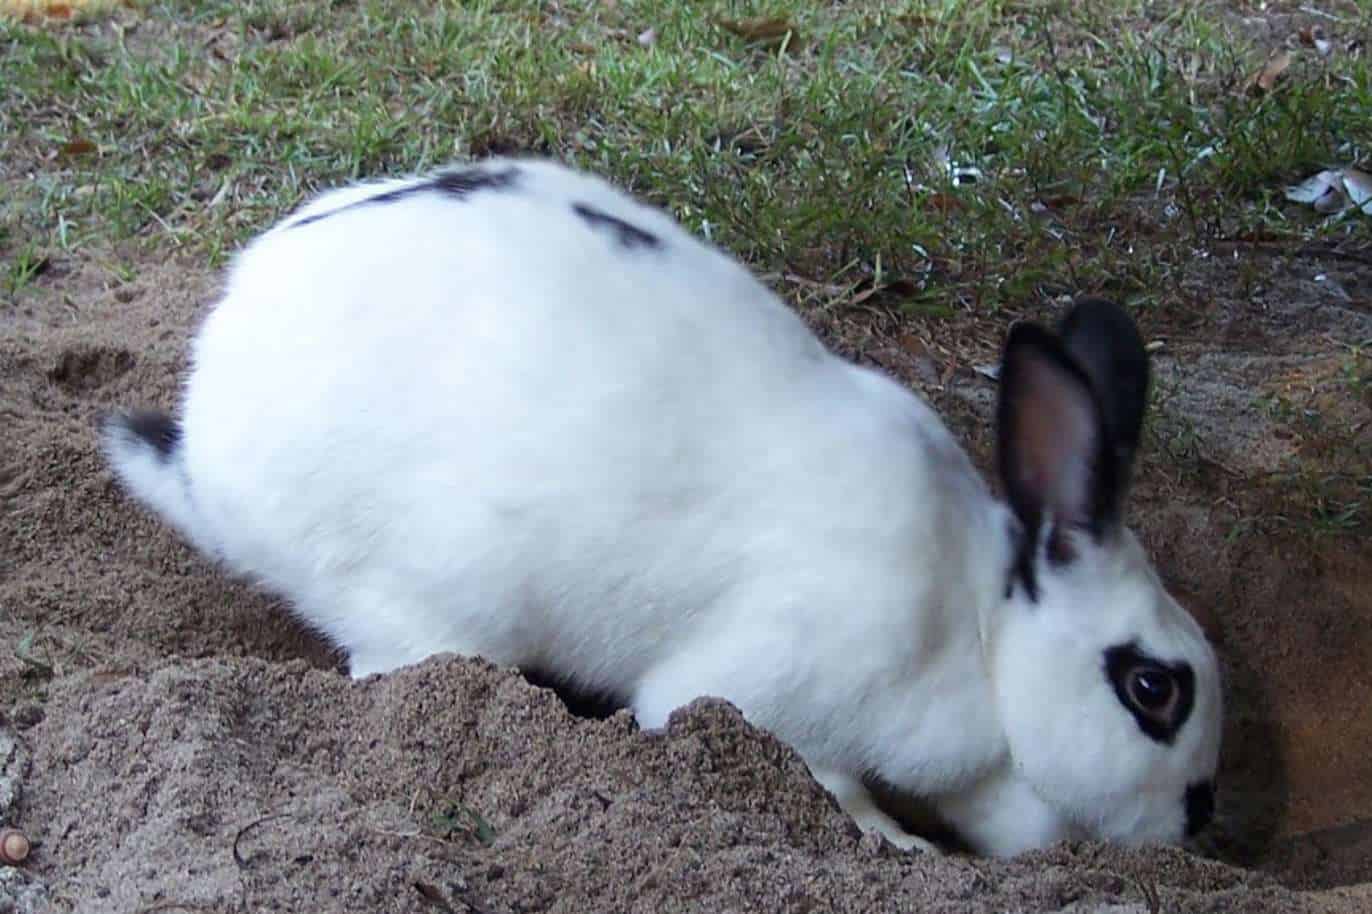 Top 8 Reasons Why Rabbits Dig Holes